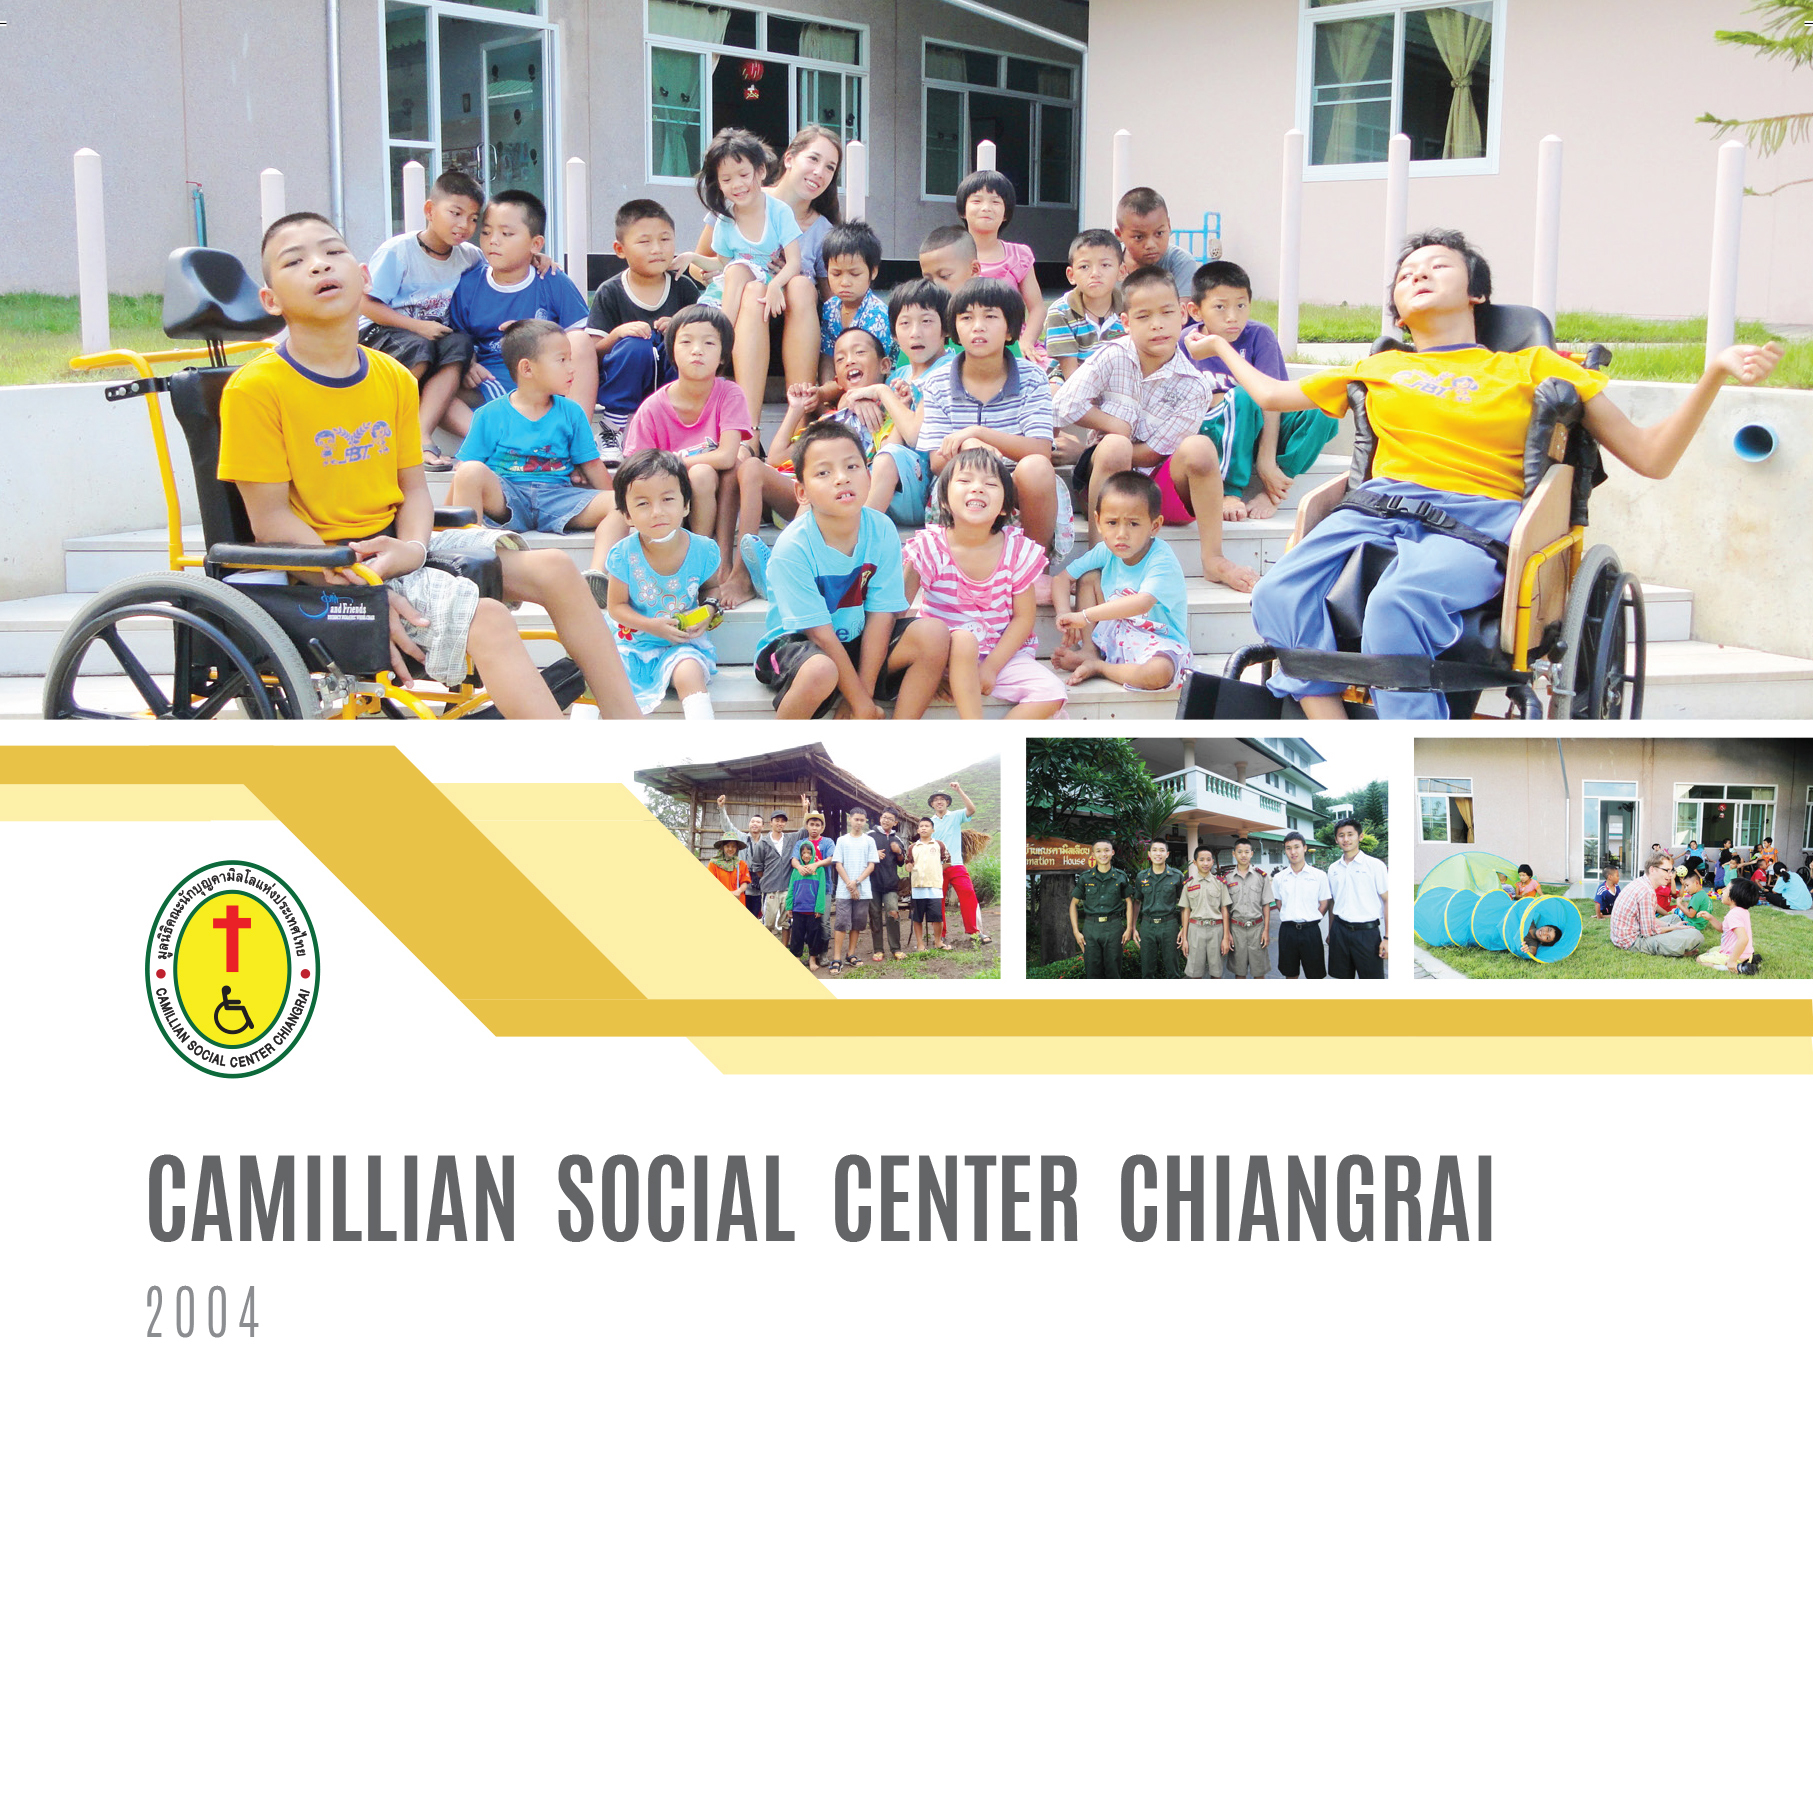 Camillian Social Center Chiangrai